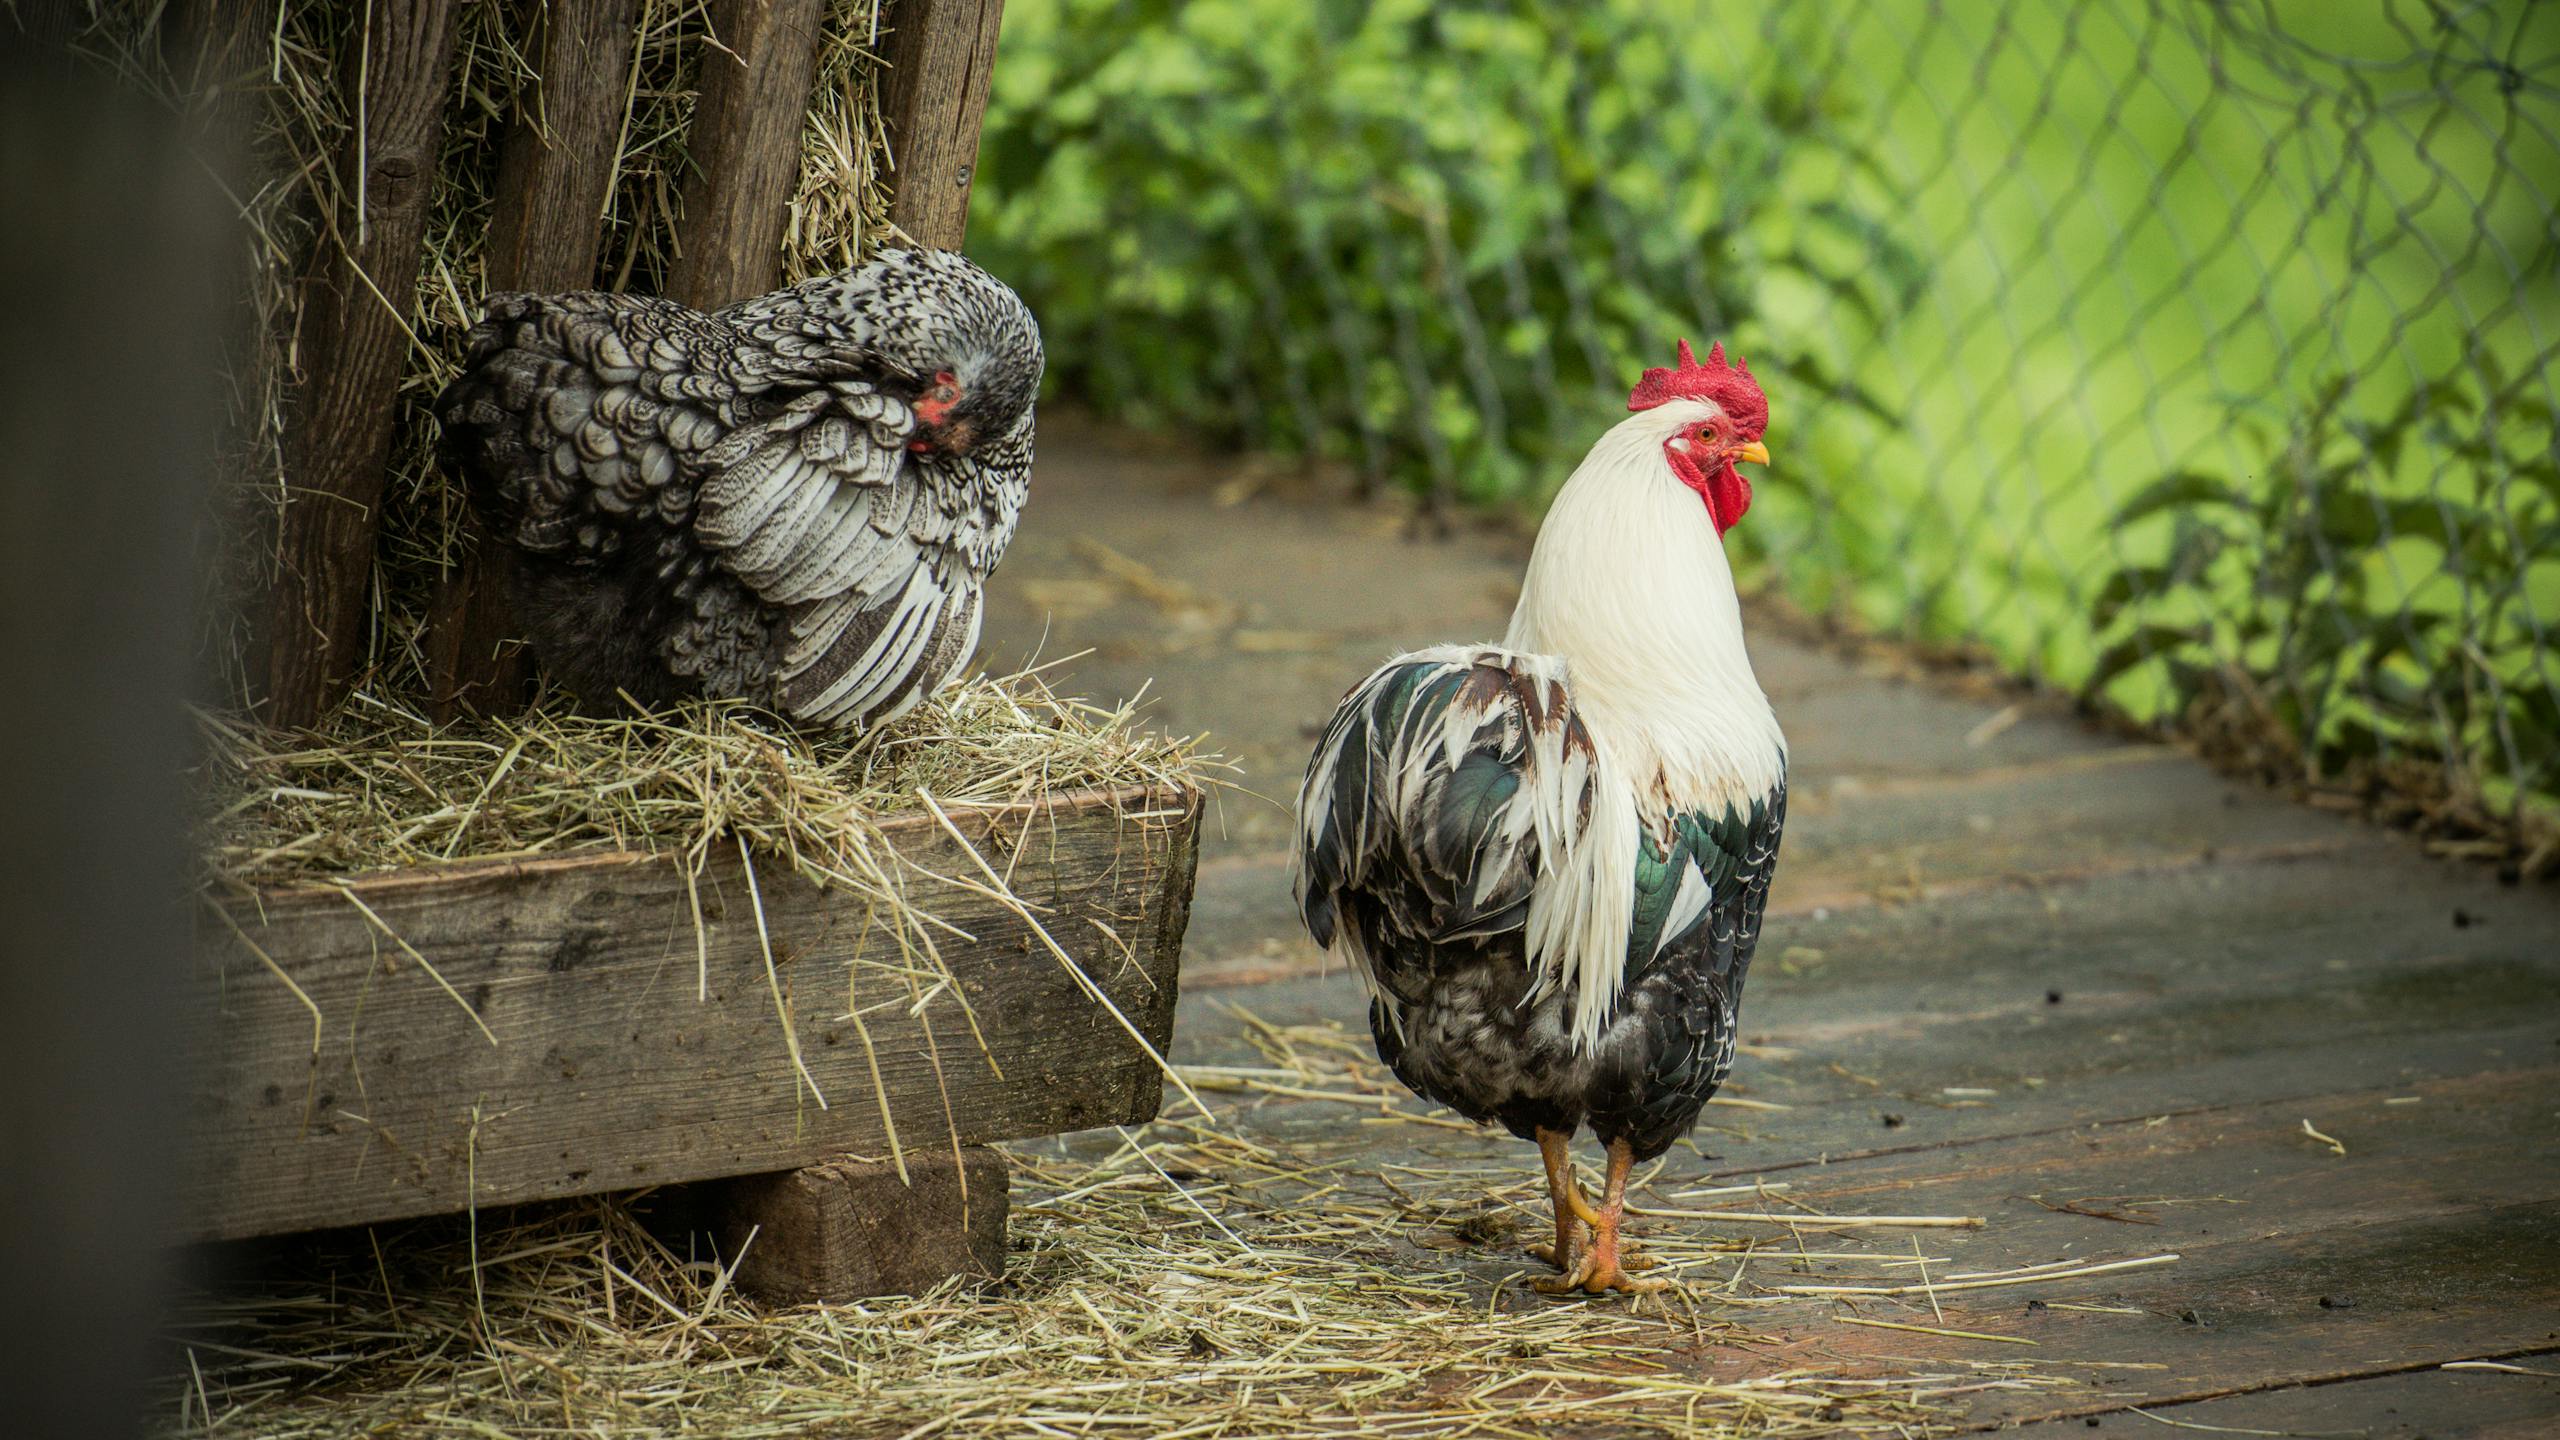 Im Freilichtmuseum Ballenberg gibt es über 200 Bauernhoftiere. Darunter auch verschiedene Rassen von Hühner.